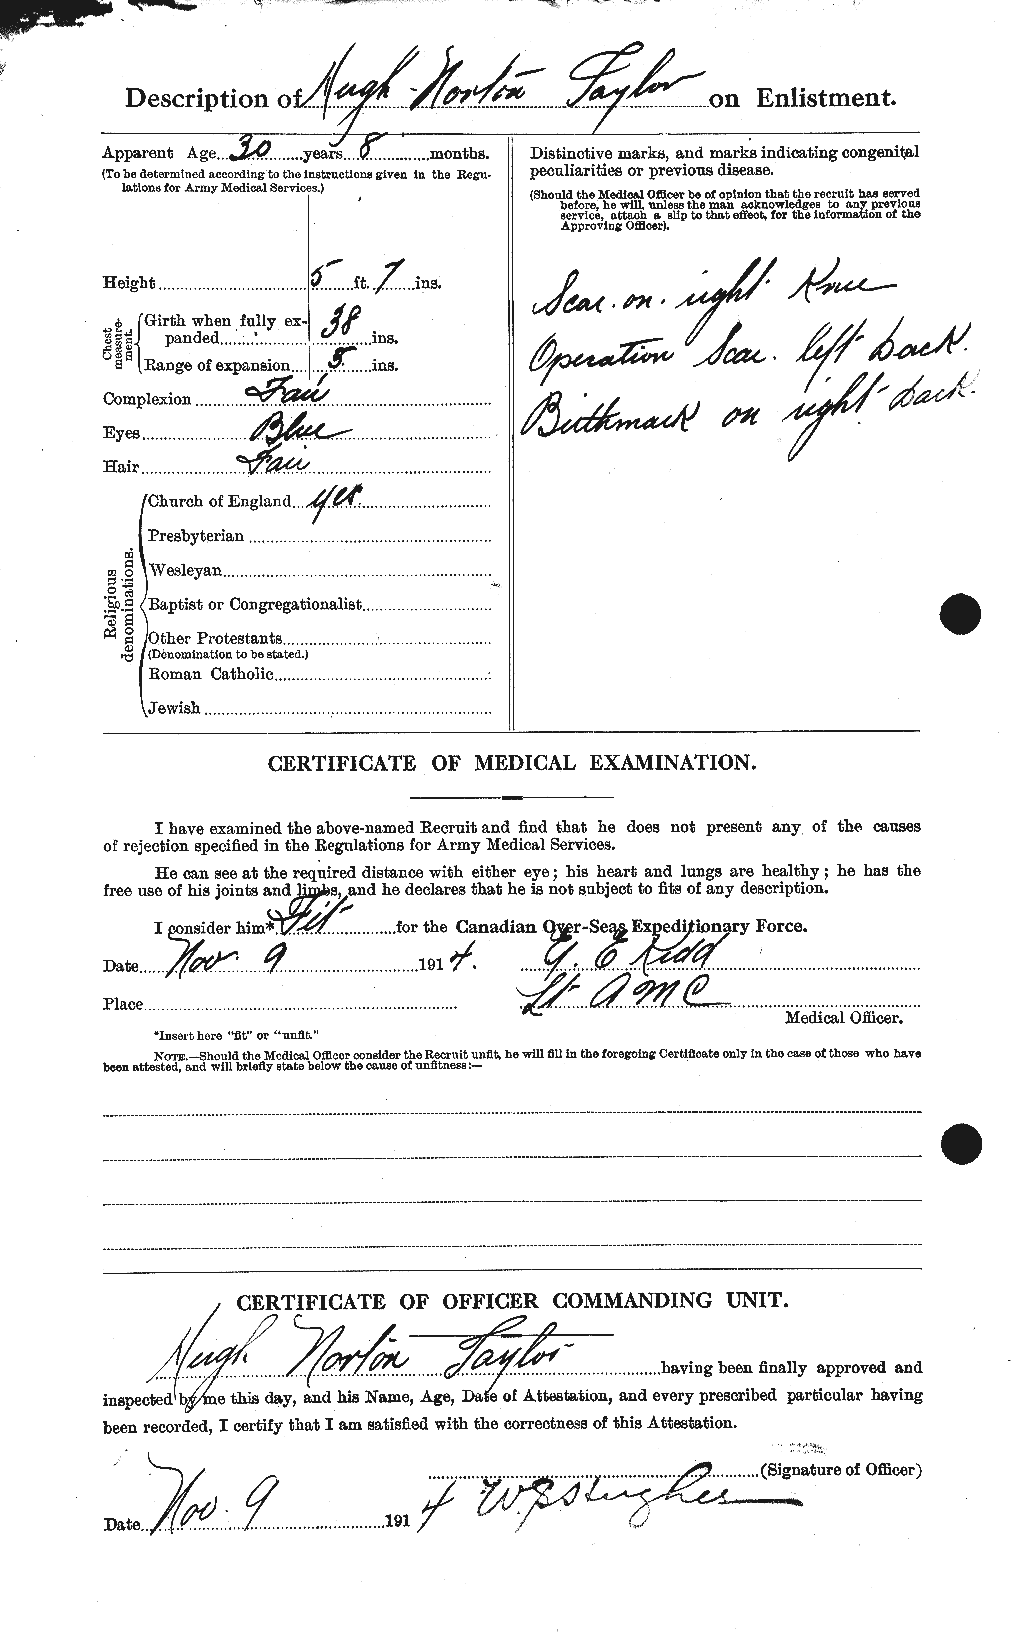 Dossiers du Personnel de la Première Guerre mondiale - CEC 626620b